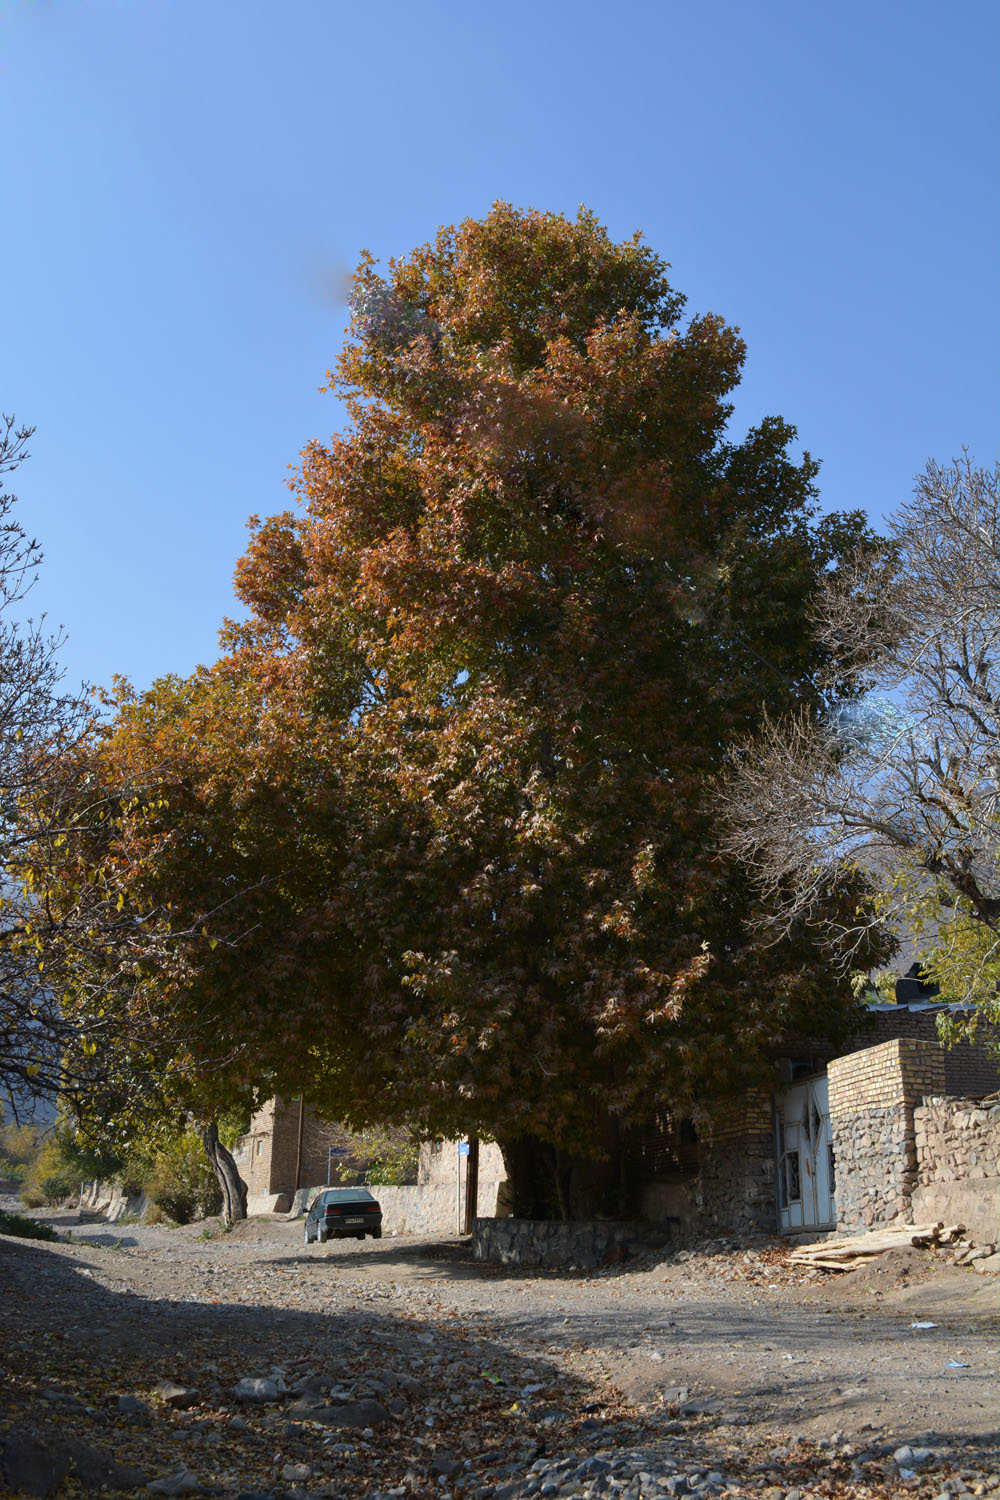 ثبت مجموعه درختان چنار عمارت باغ سراب شاهرود در فهرست میراث طبیعی ملی